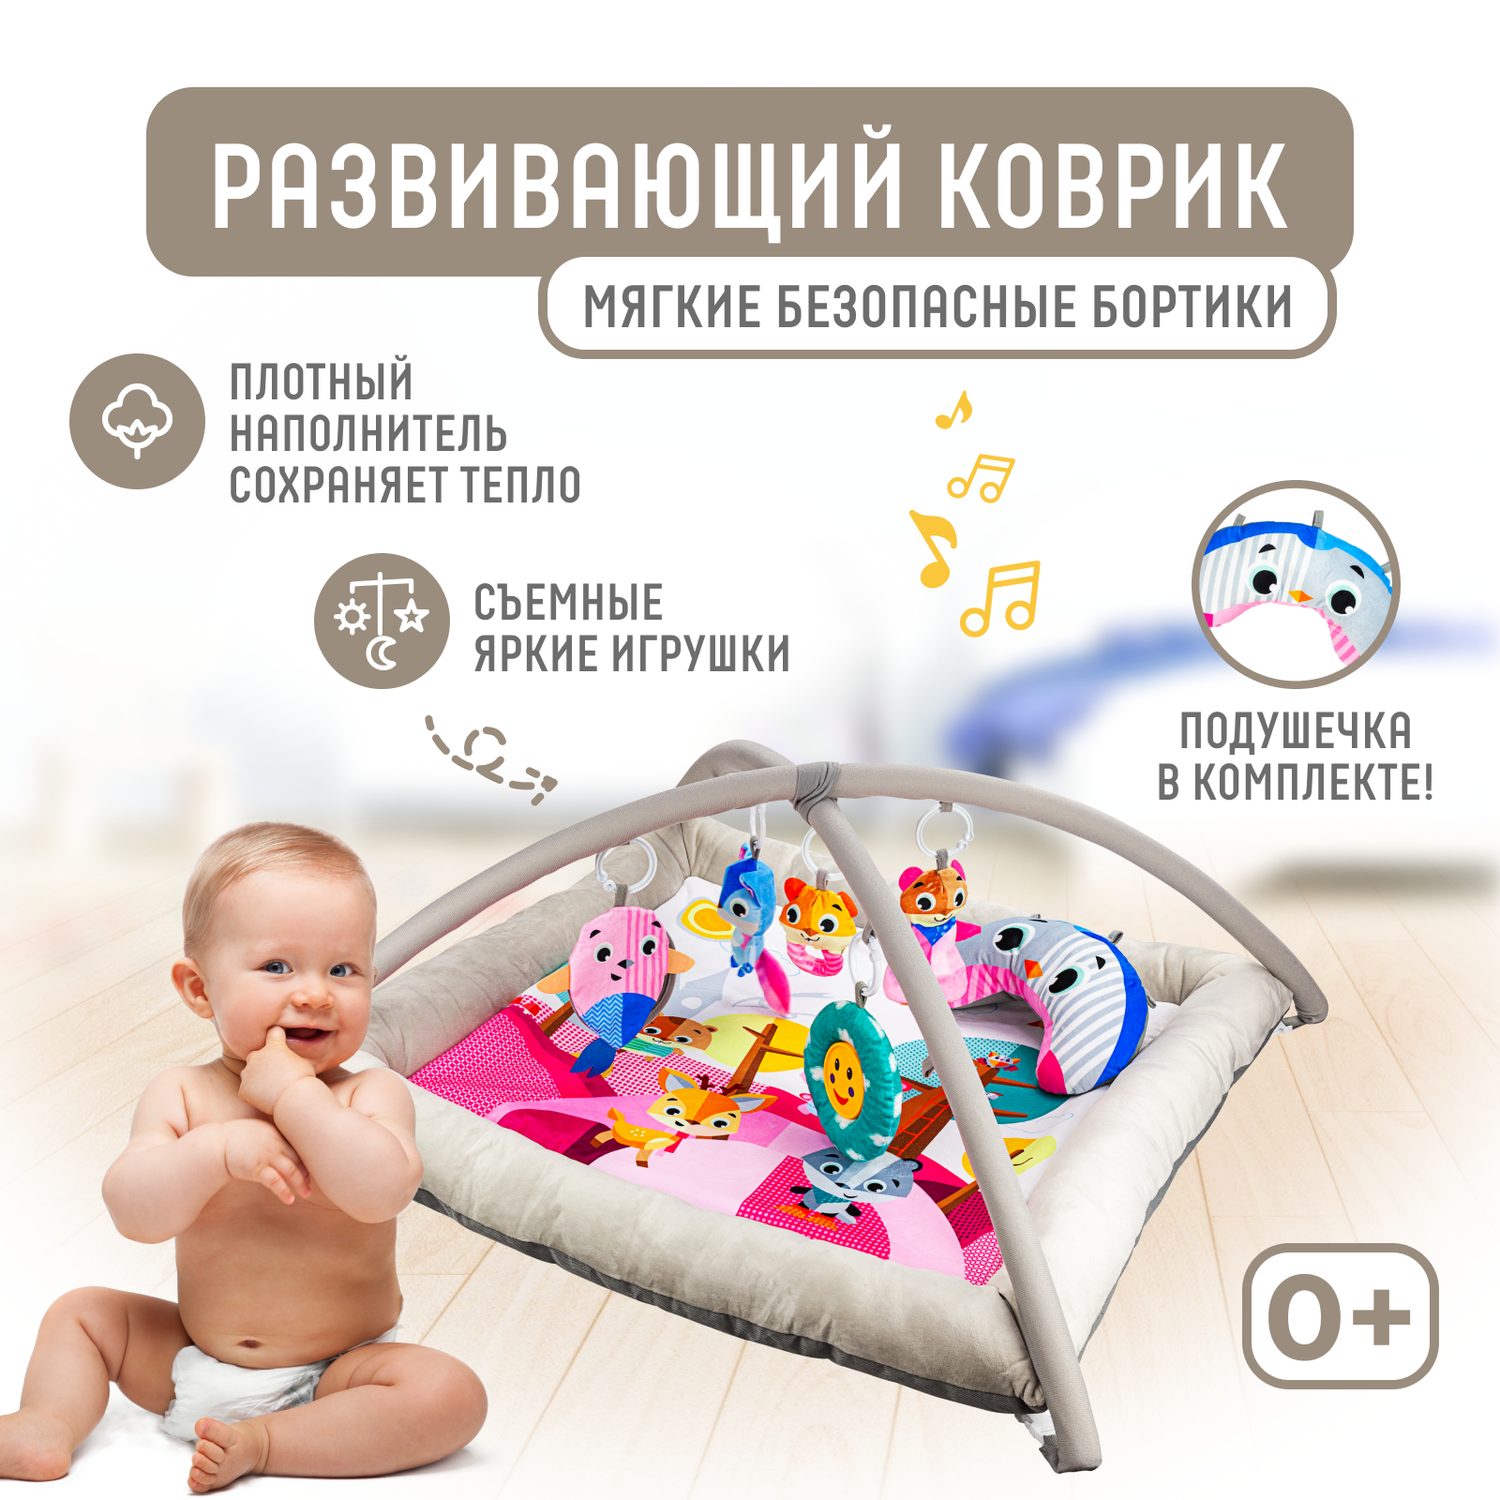 Развивающий игровой коврик Solmax для новорожденных с дугой и игрушками бежевый/розовый - фото 1